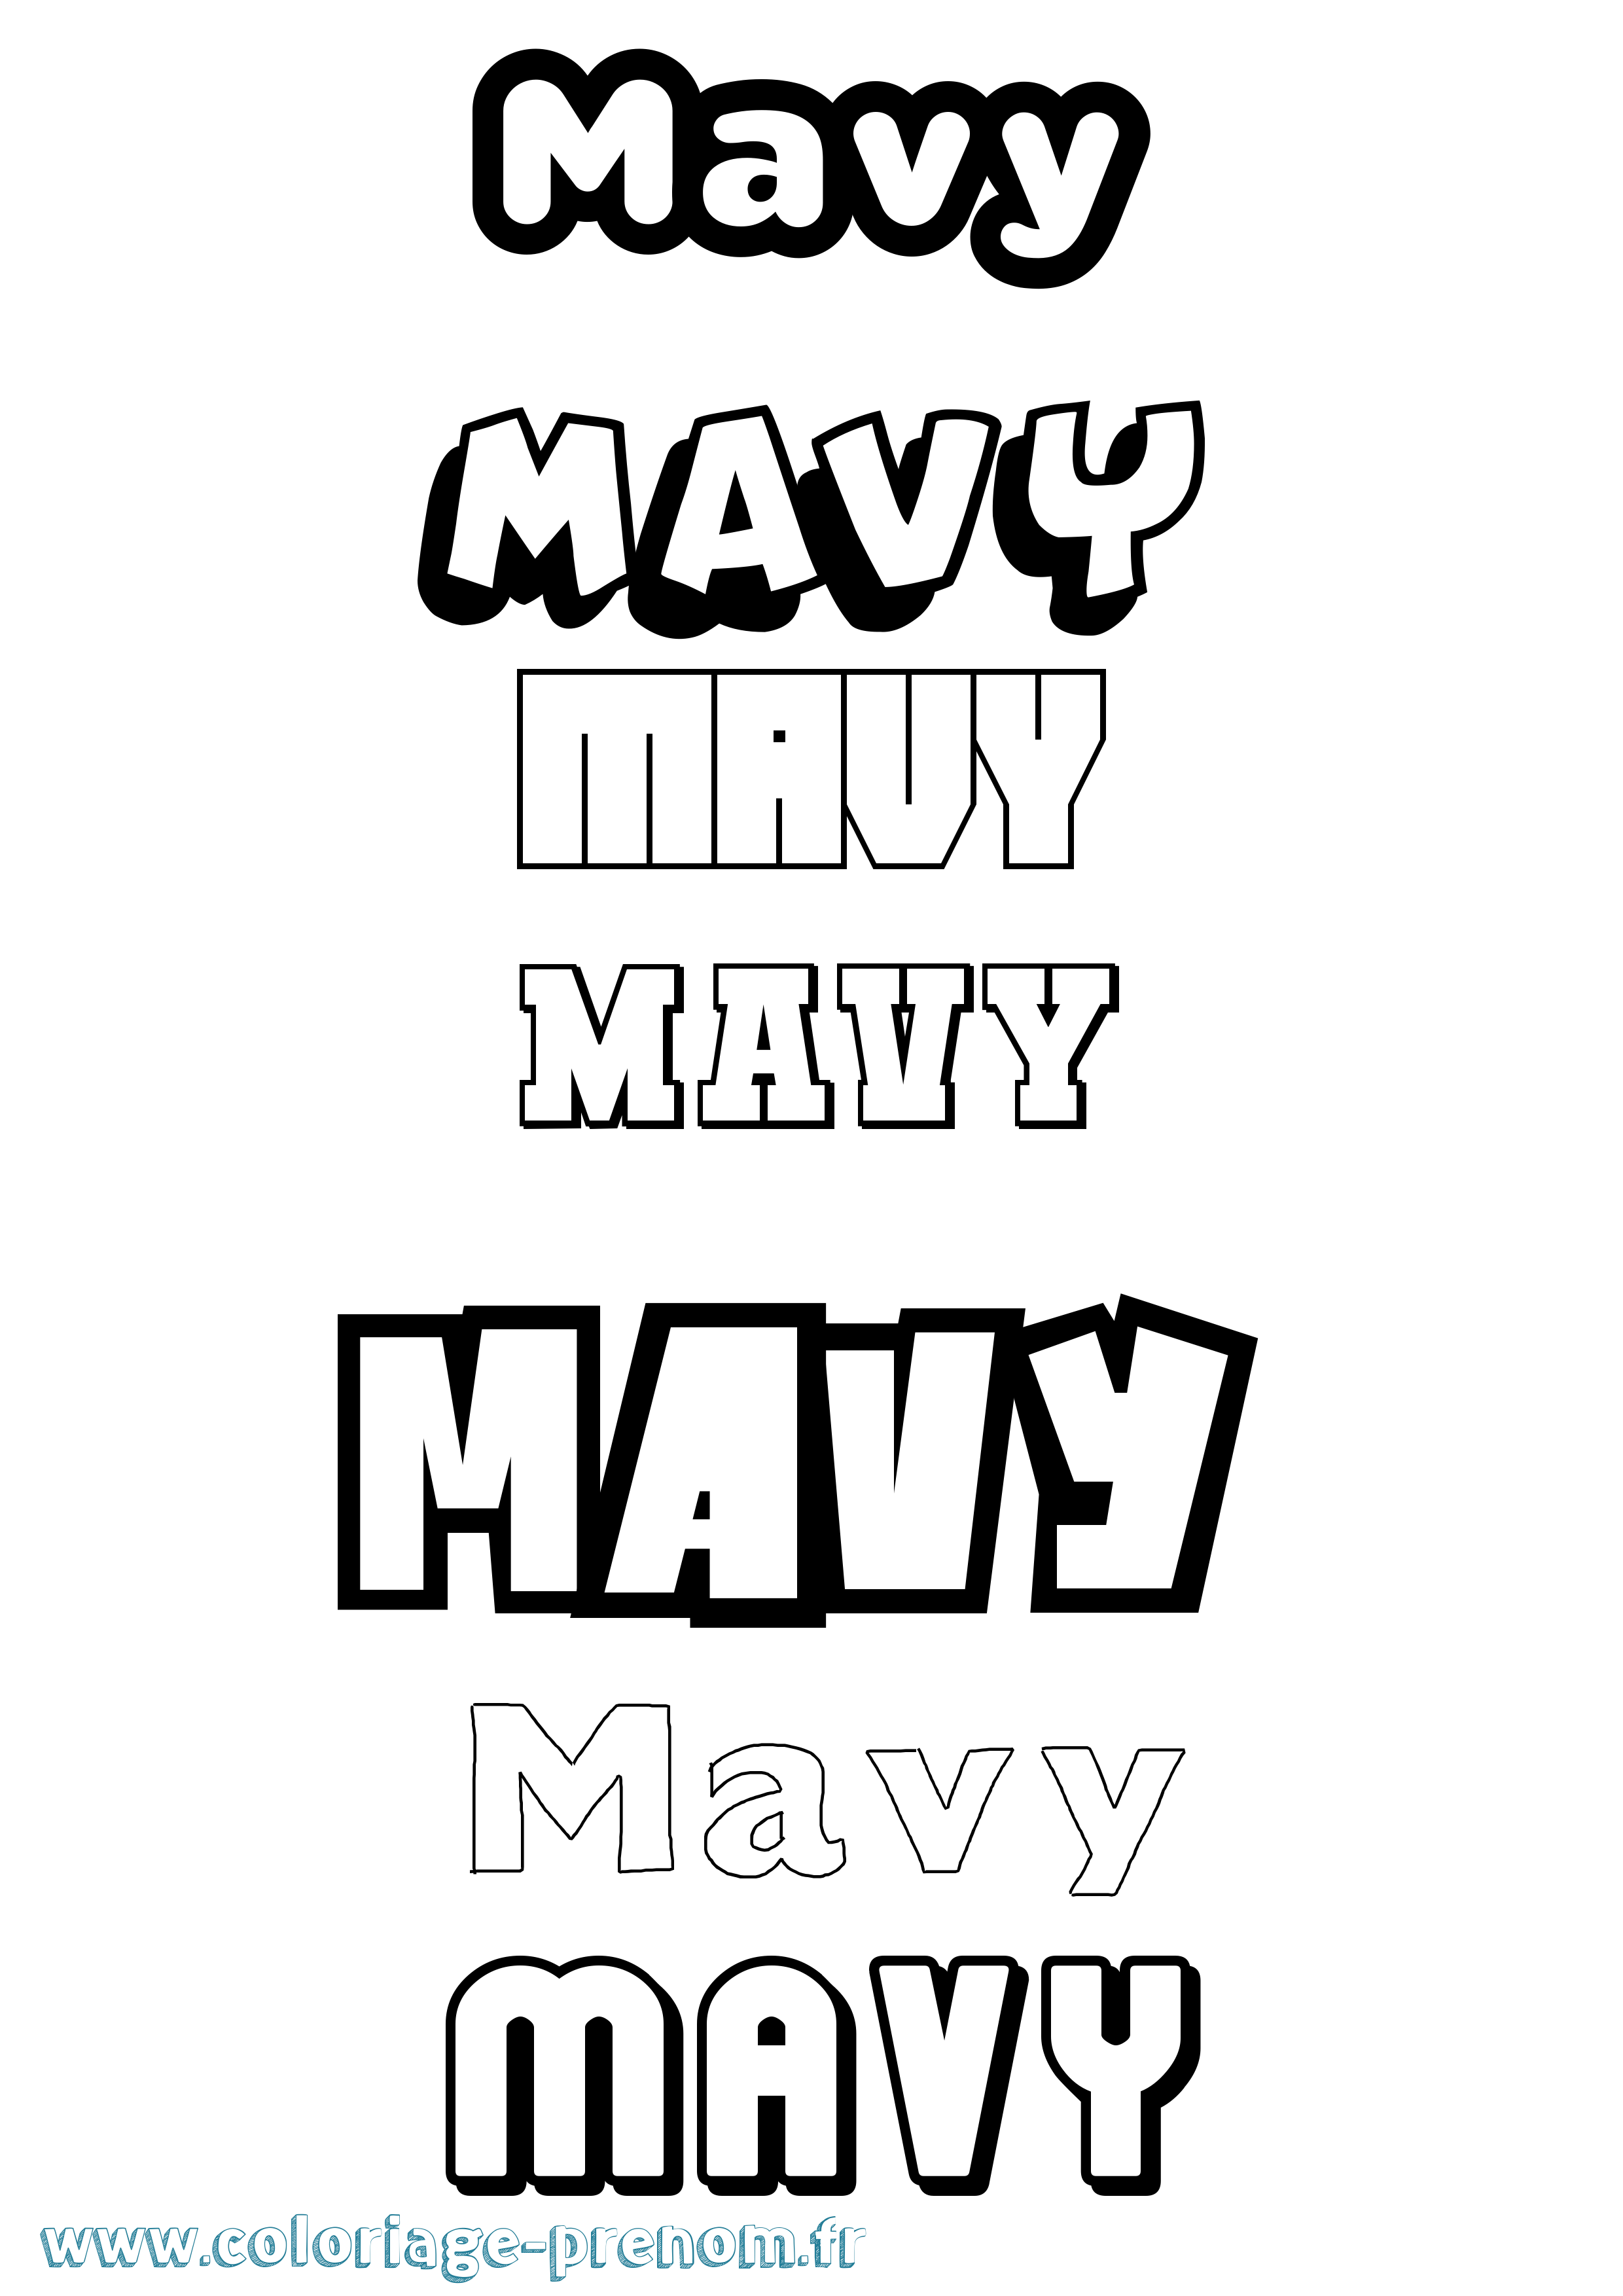 Coloriage prénom Mavy Simple